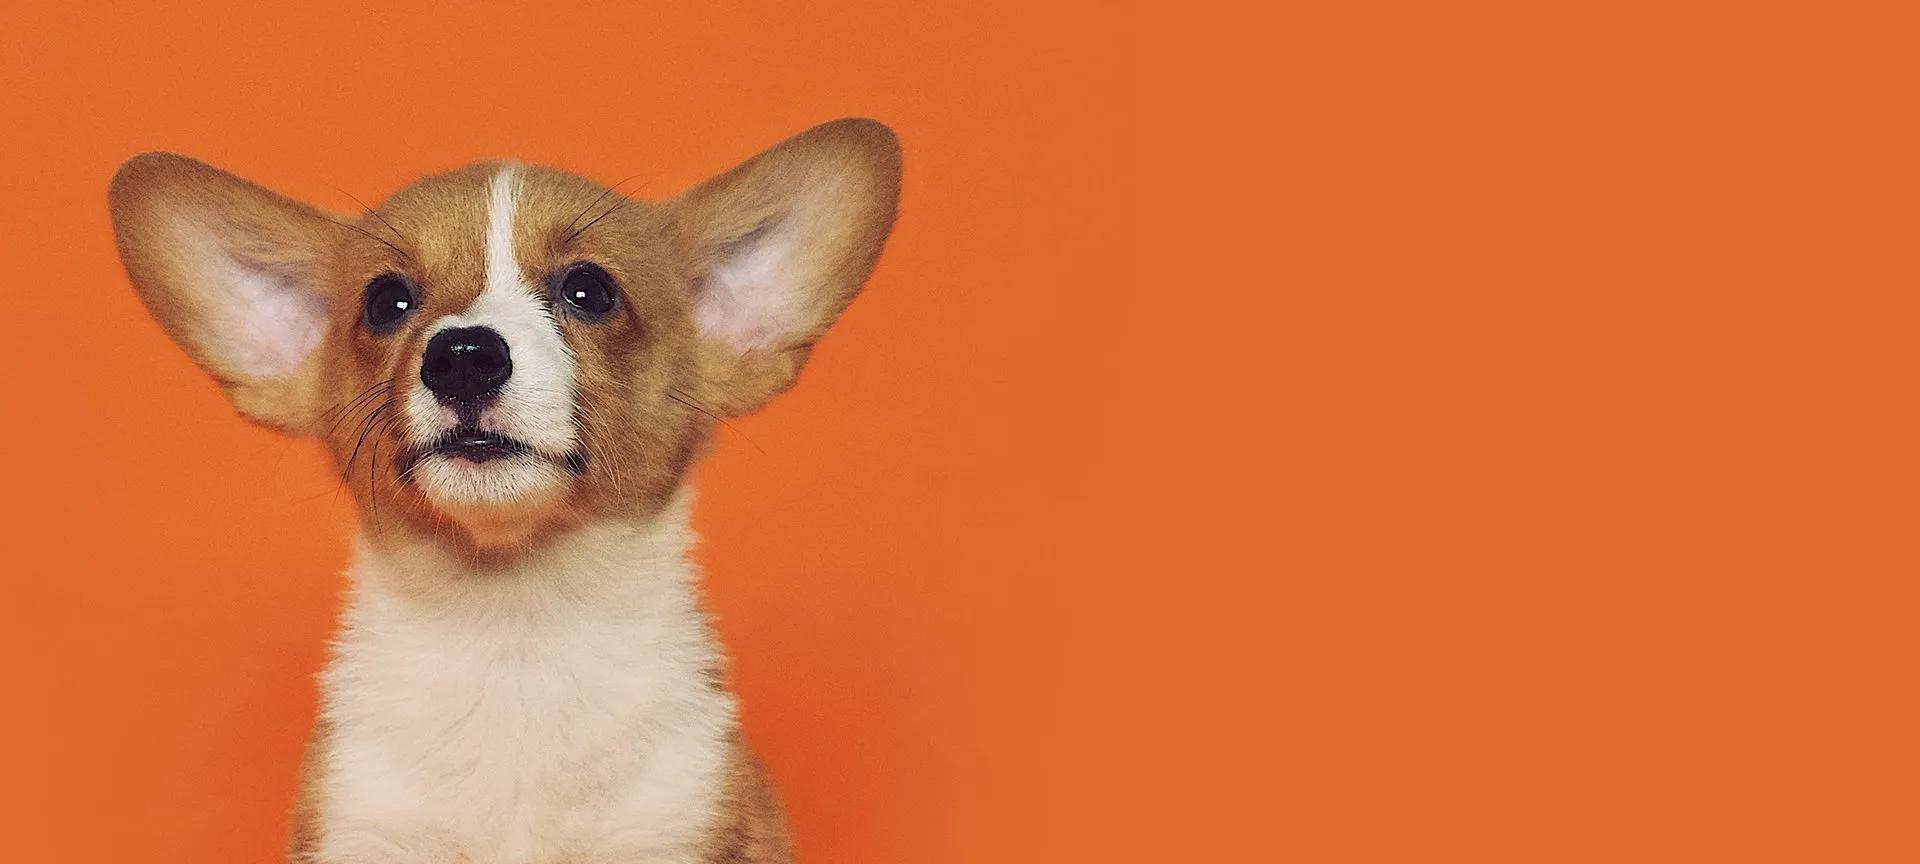 Corgi puppy on orange background